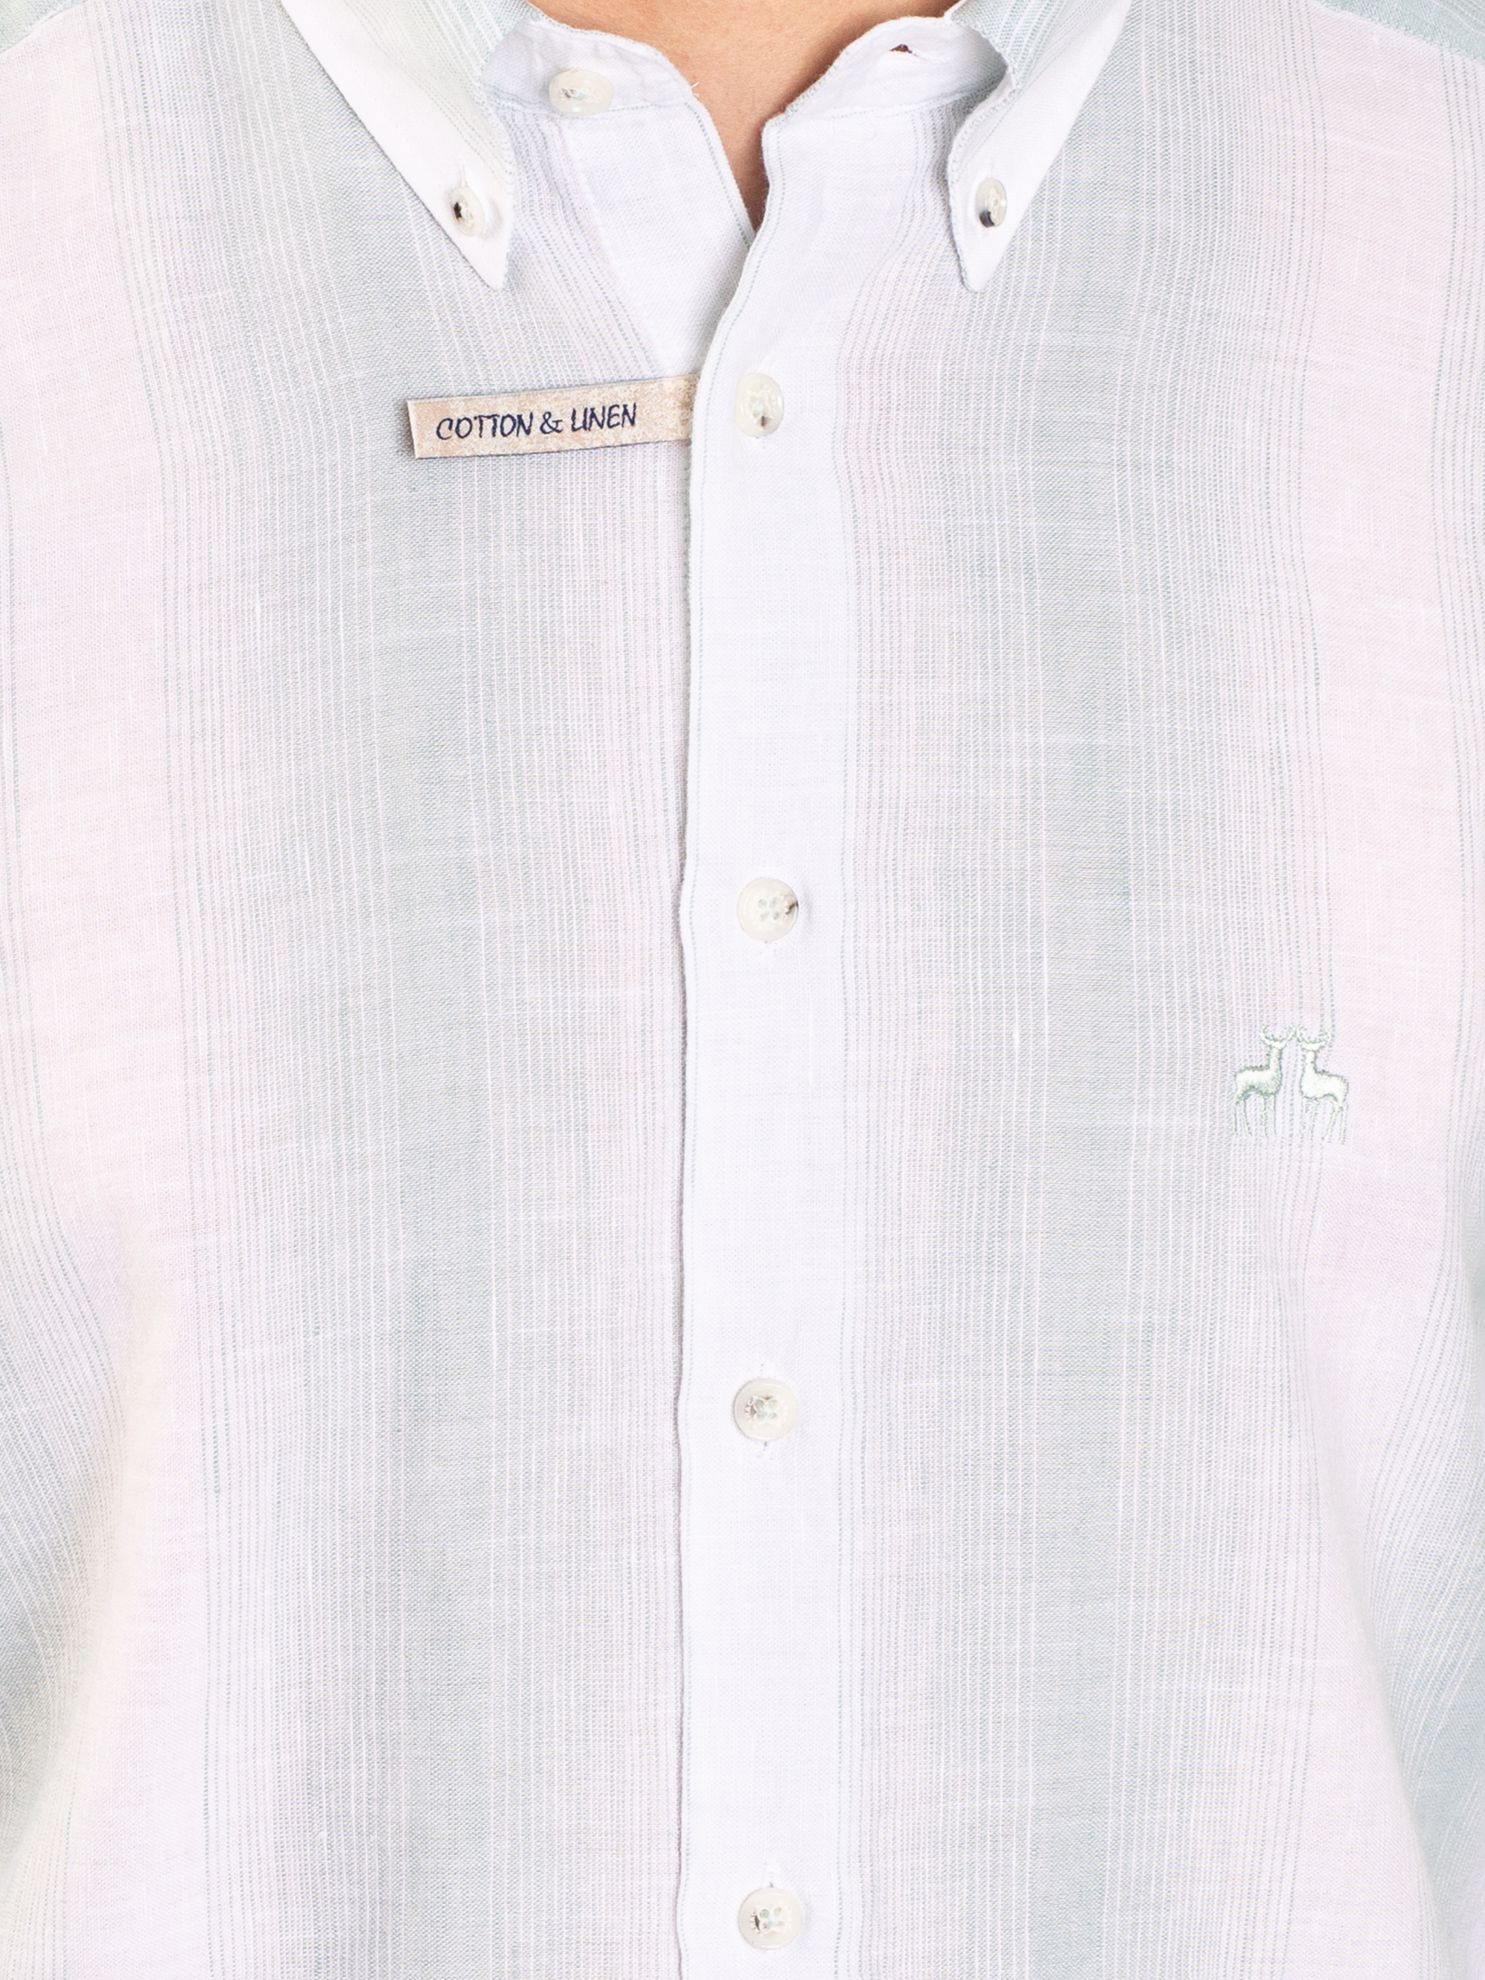 Karaca Erkek Slim Fit Gömlek-Açık Yeşil. ürün görseli